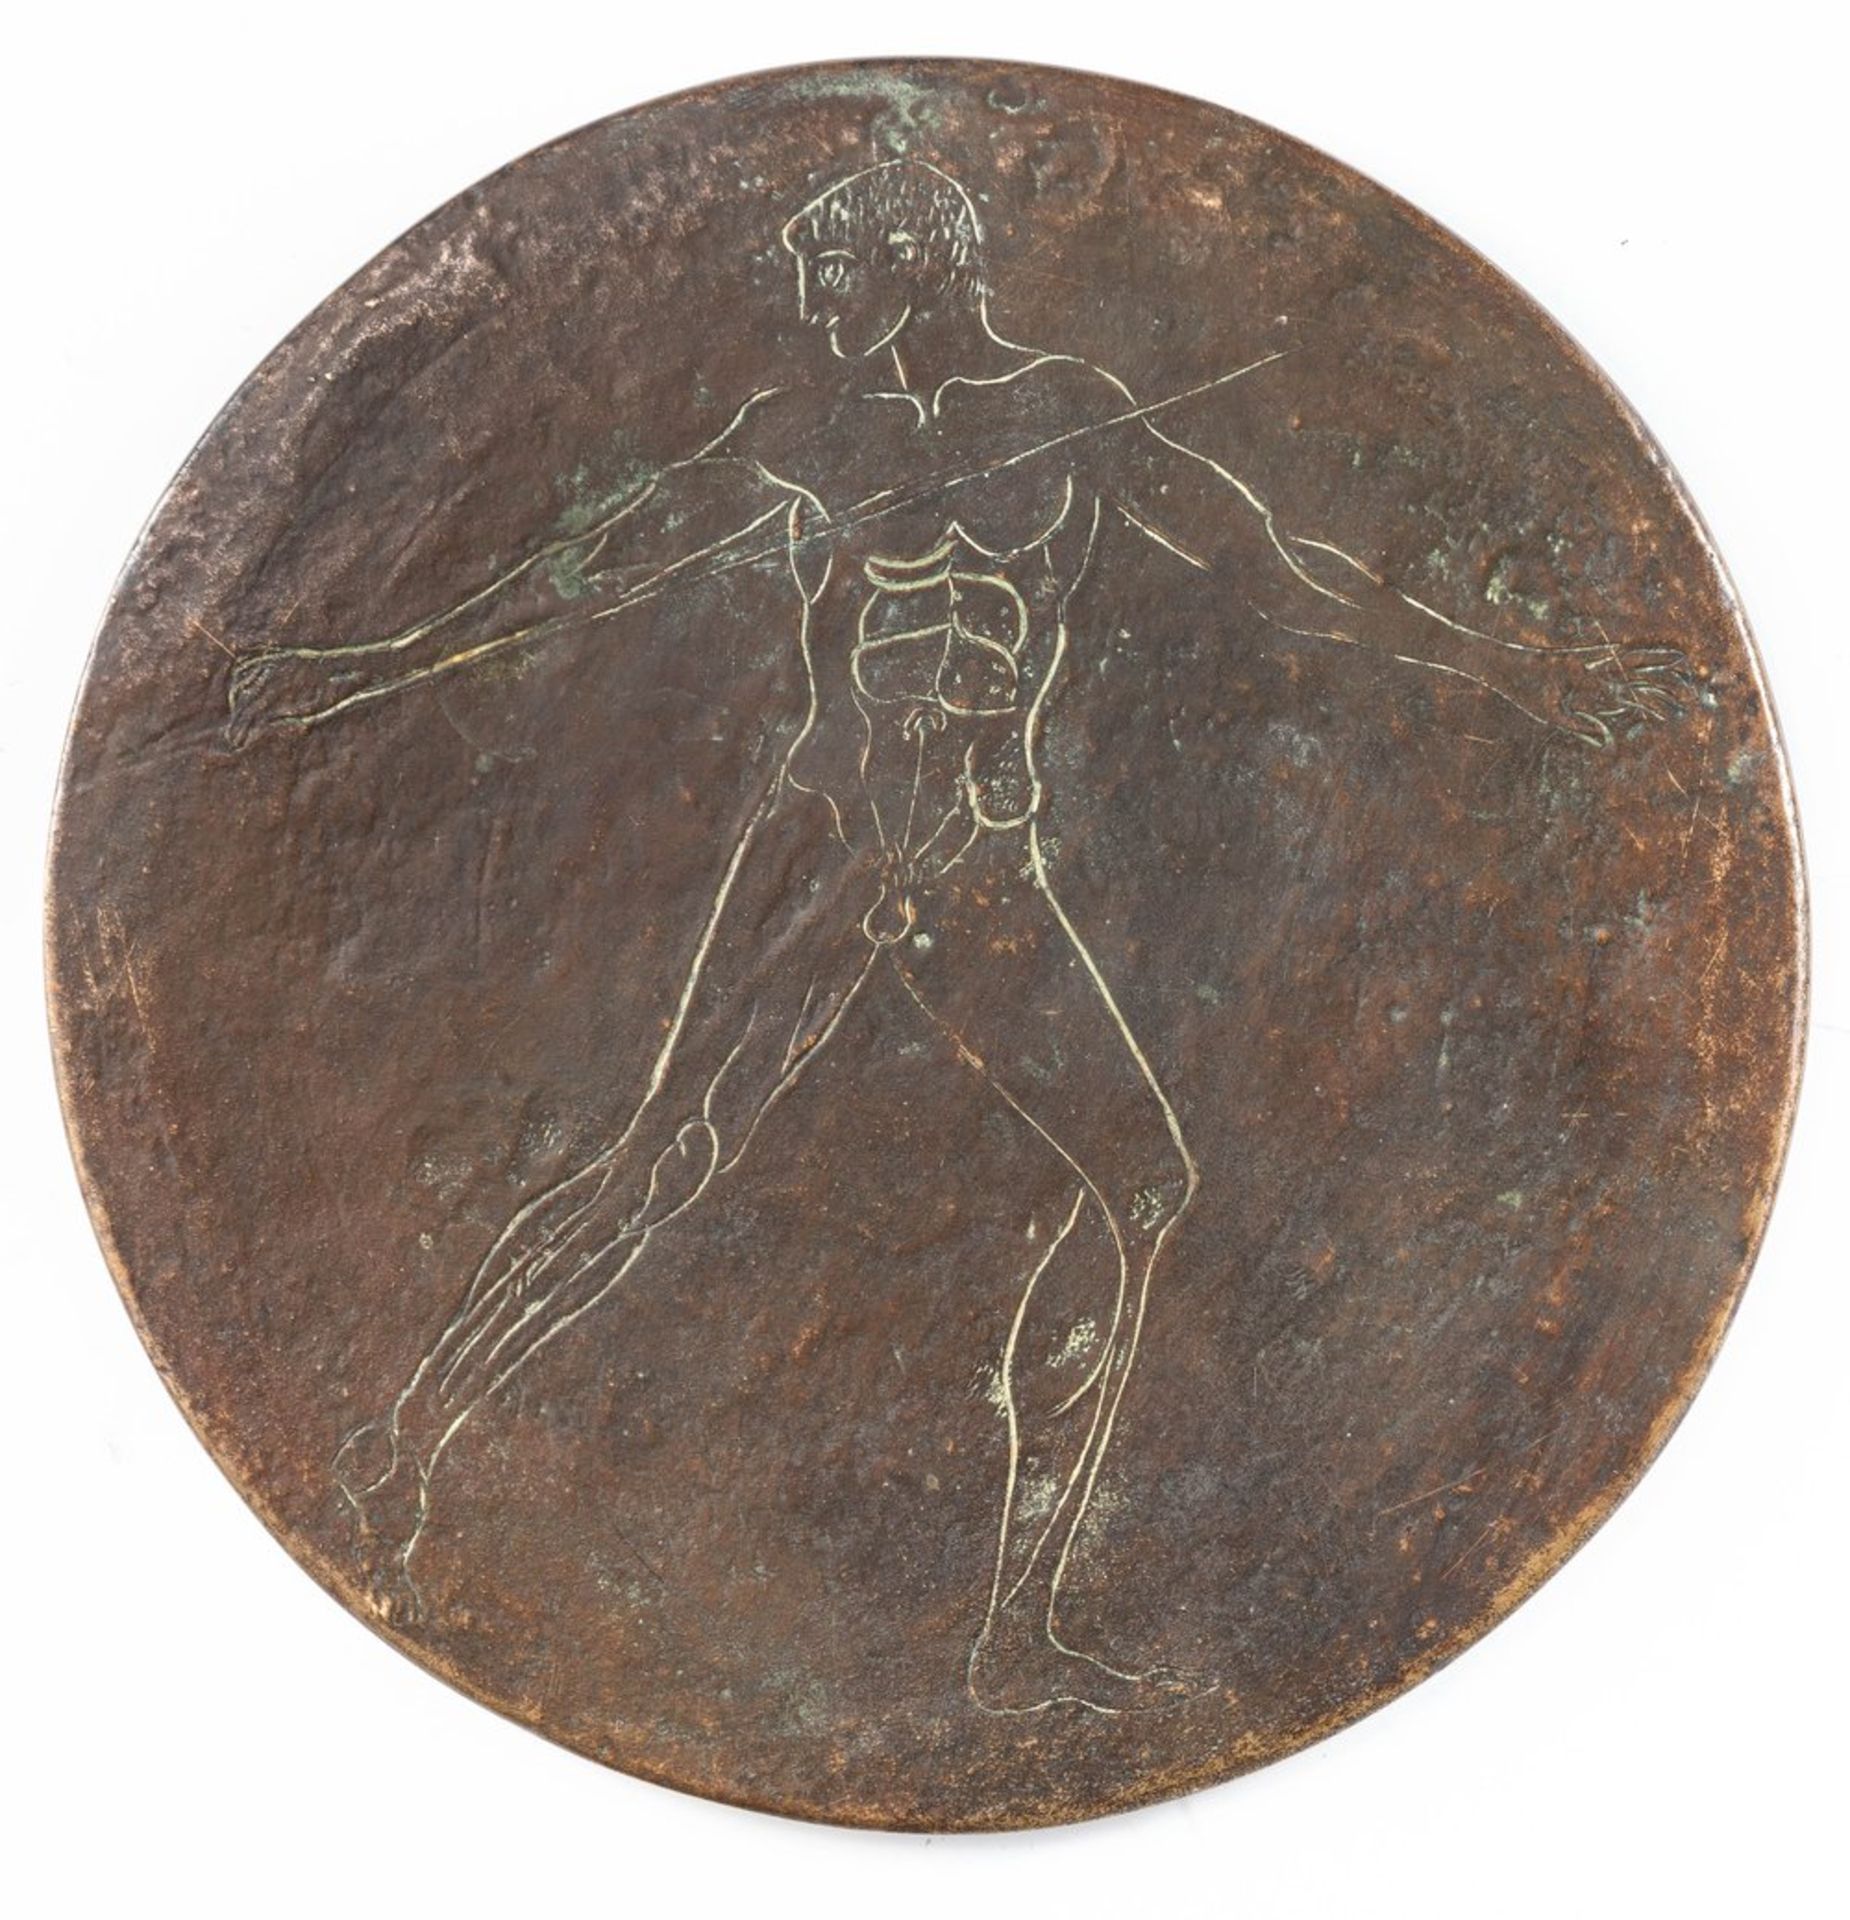 Bronze-Diskusmit eingekratztem Speerwerfer bzw. Athlet. Antikenkopie nach dem Original i